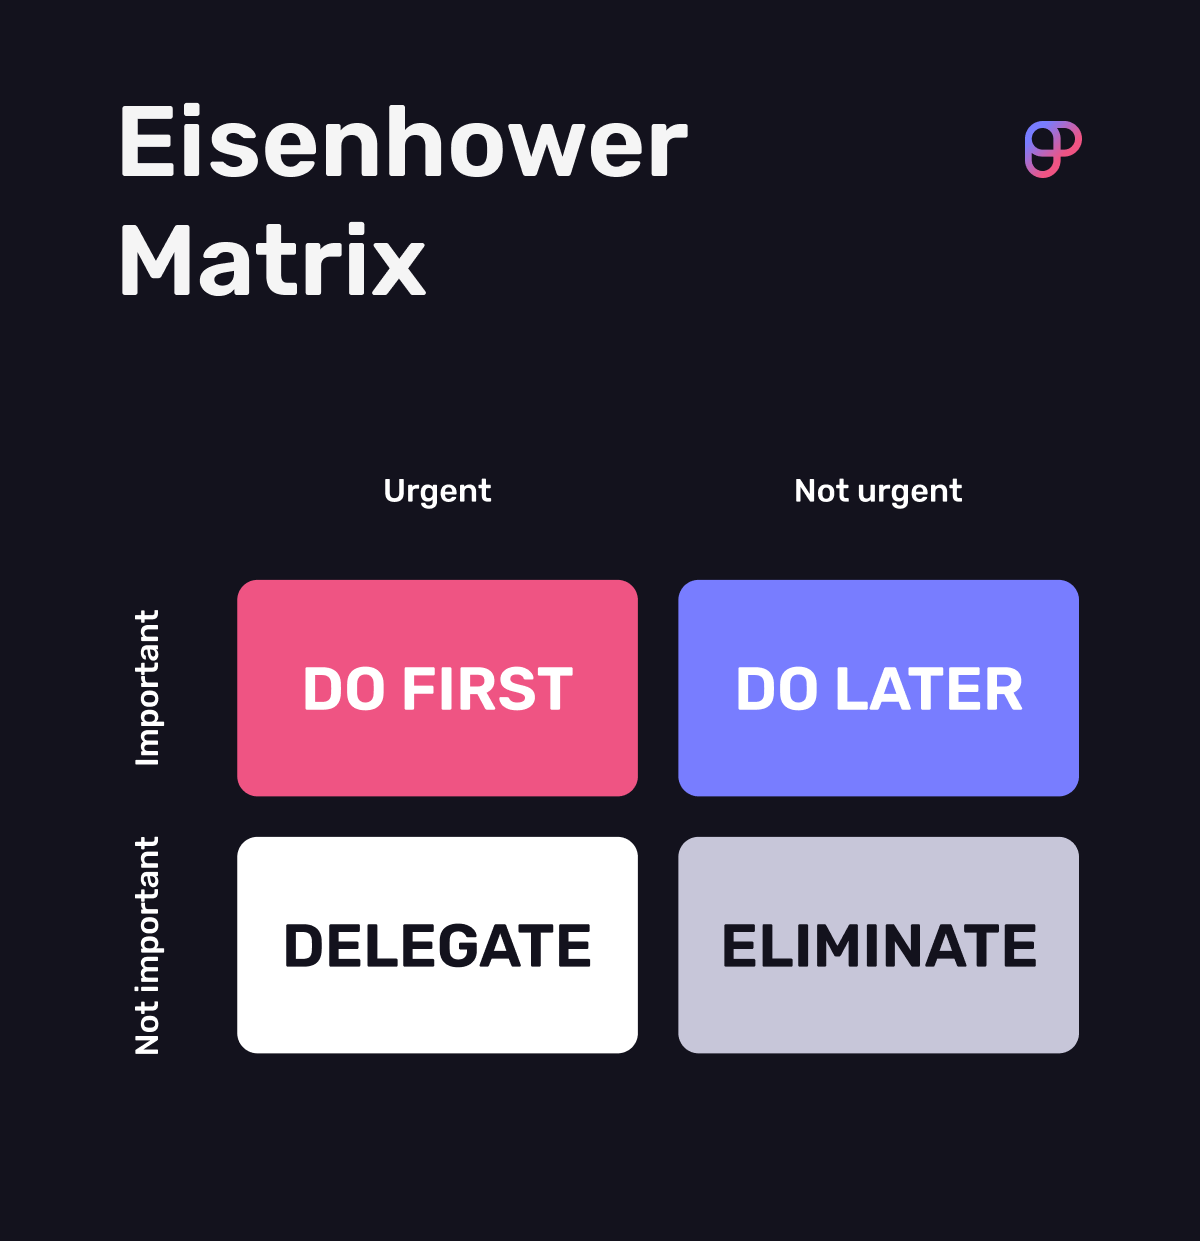 Eisenhower matrix